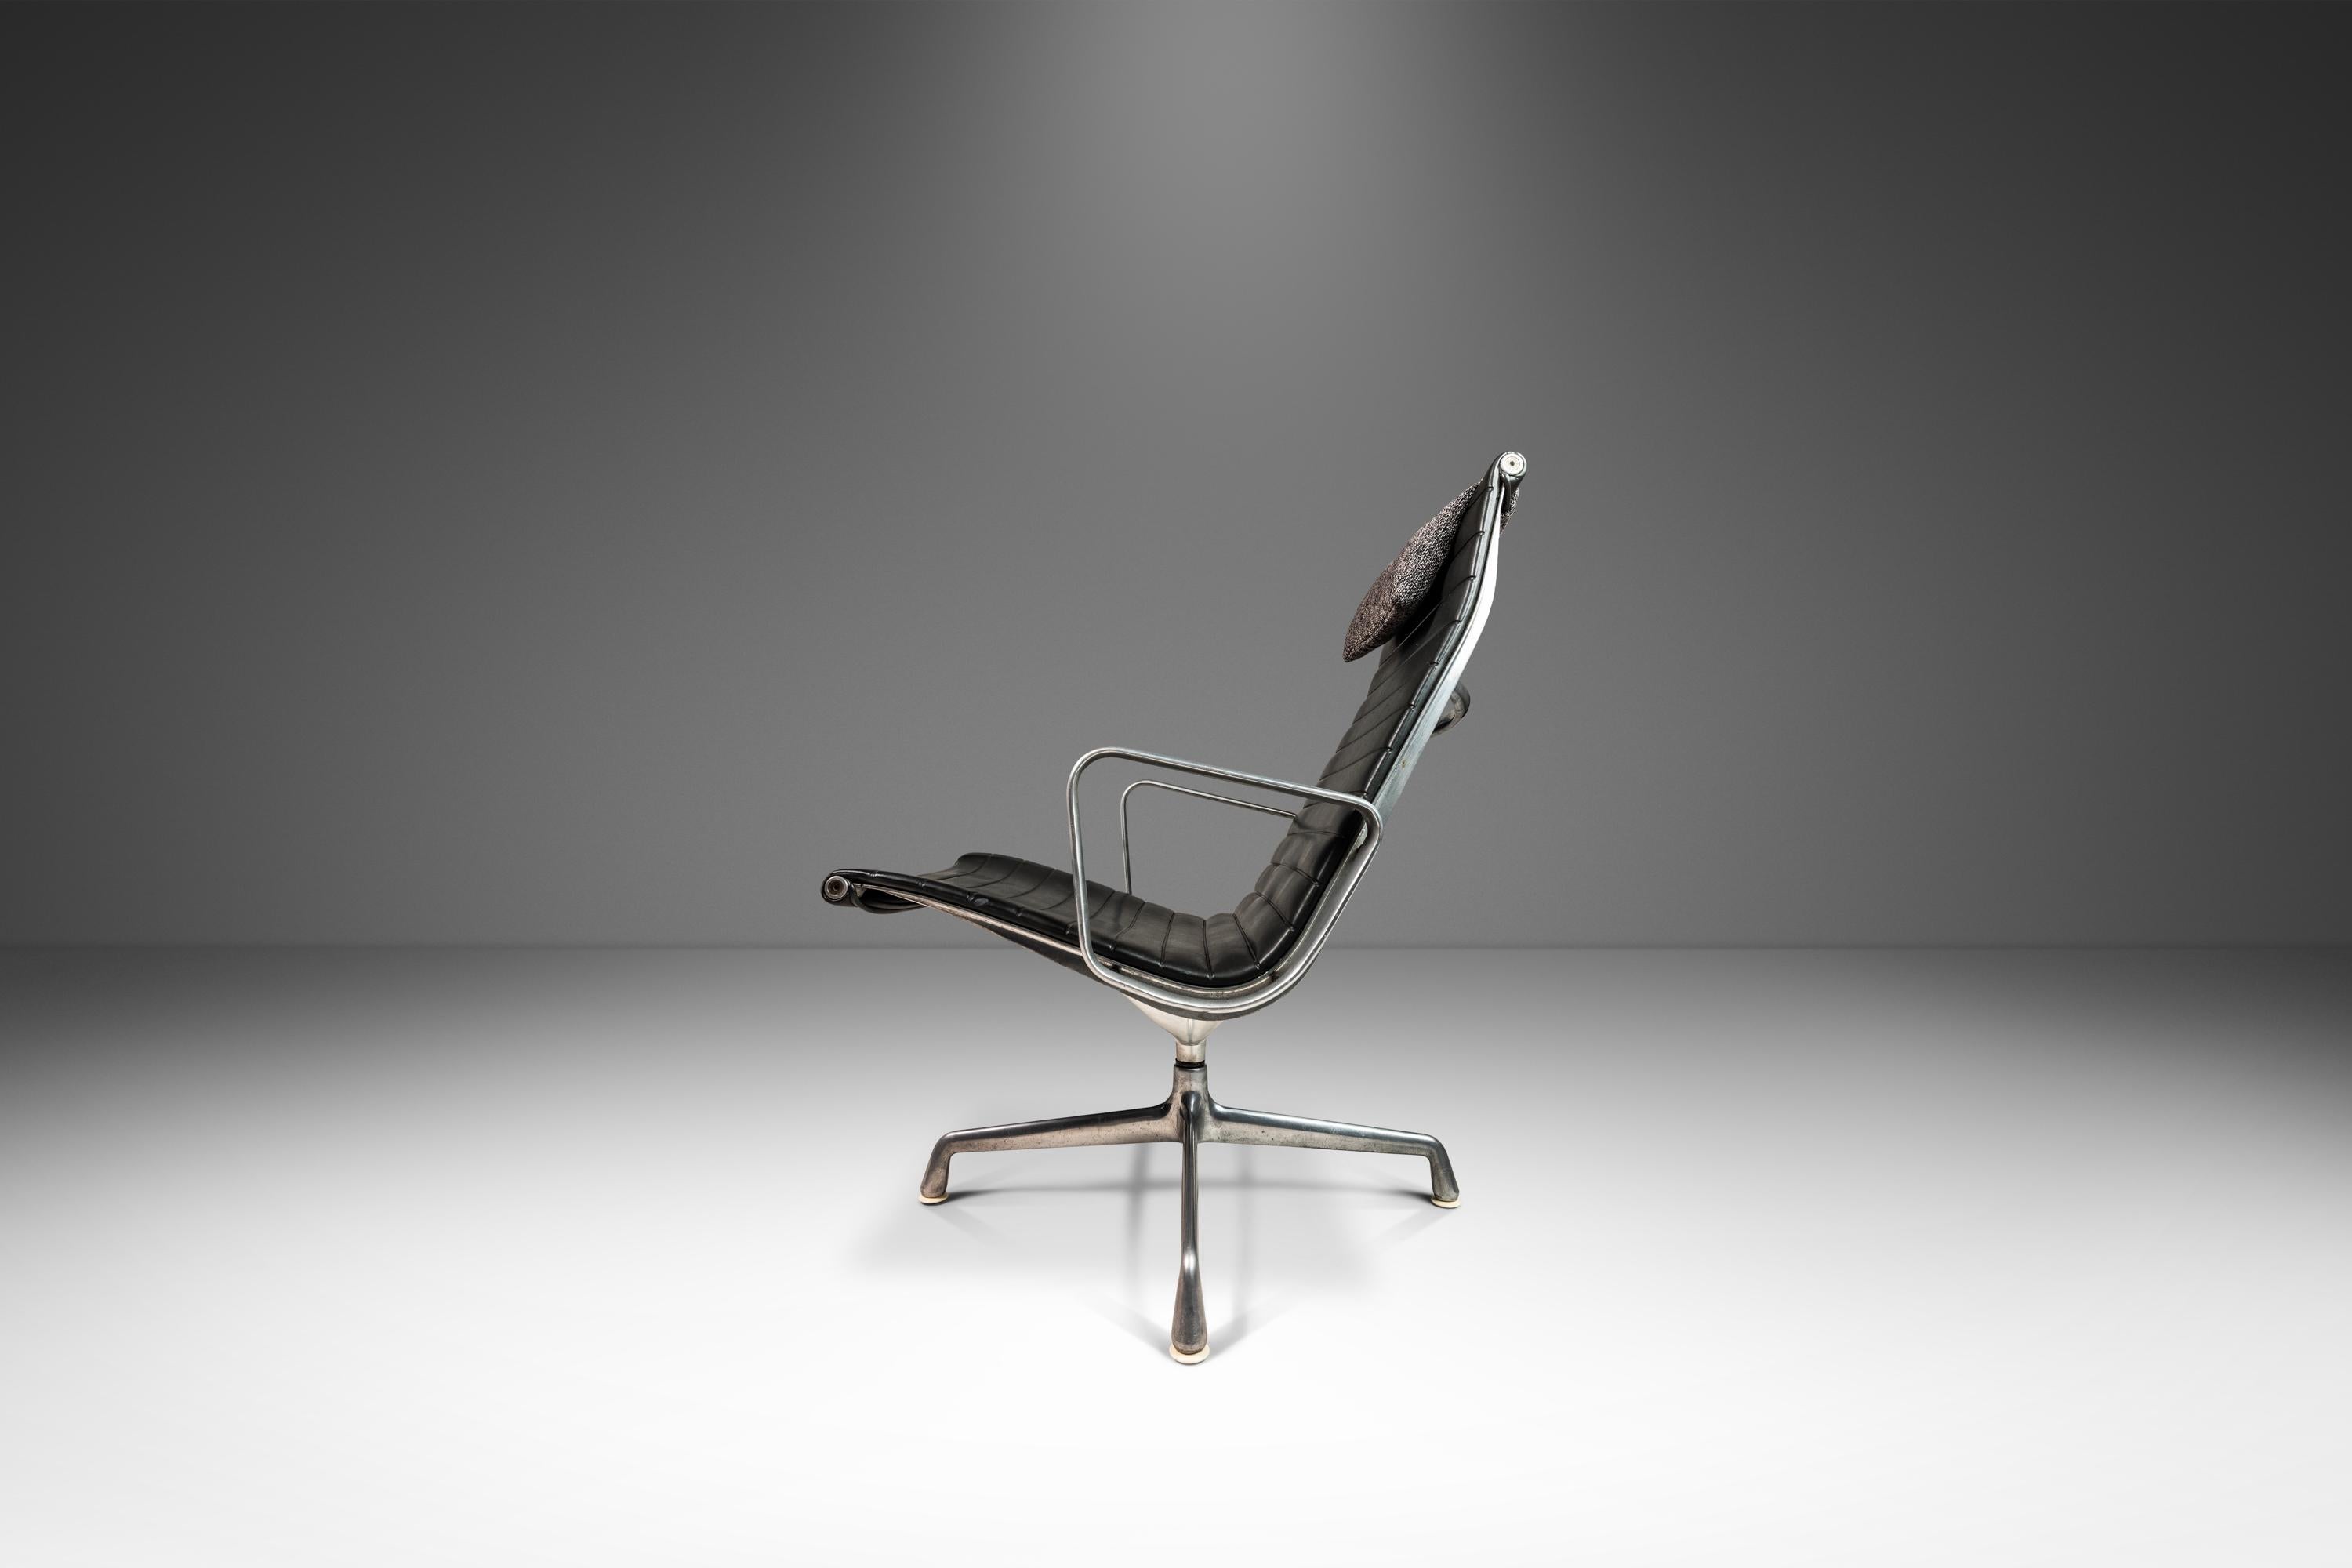 Voici une rare chaise pivotante d'époque, modèle EA 116, conçue par le couple Eames pour leur désormais emblématique 